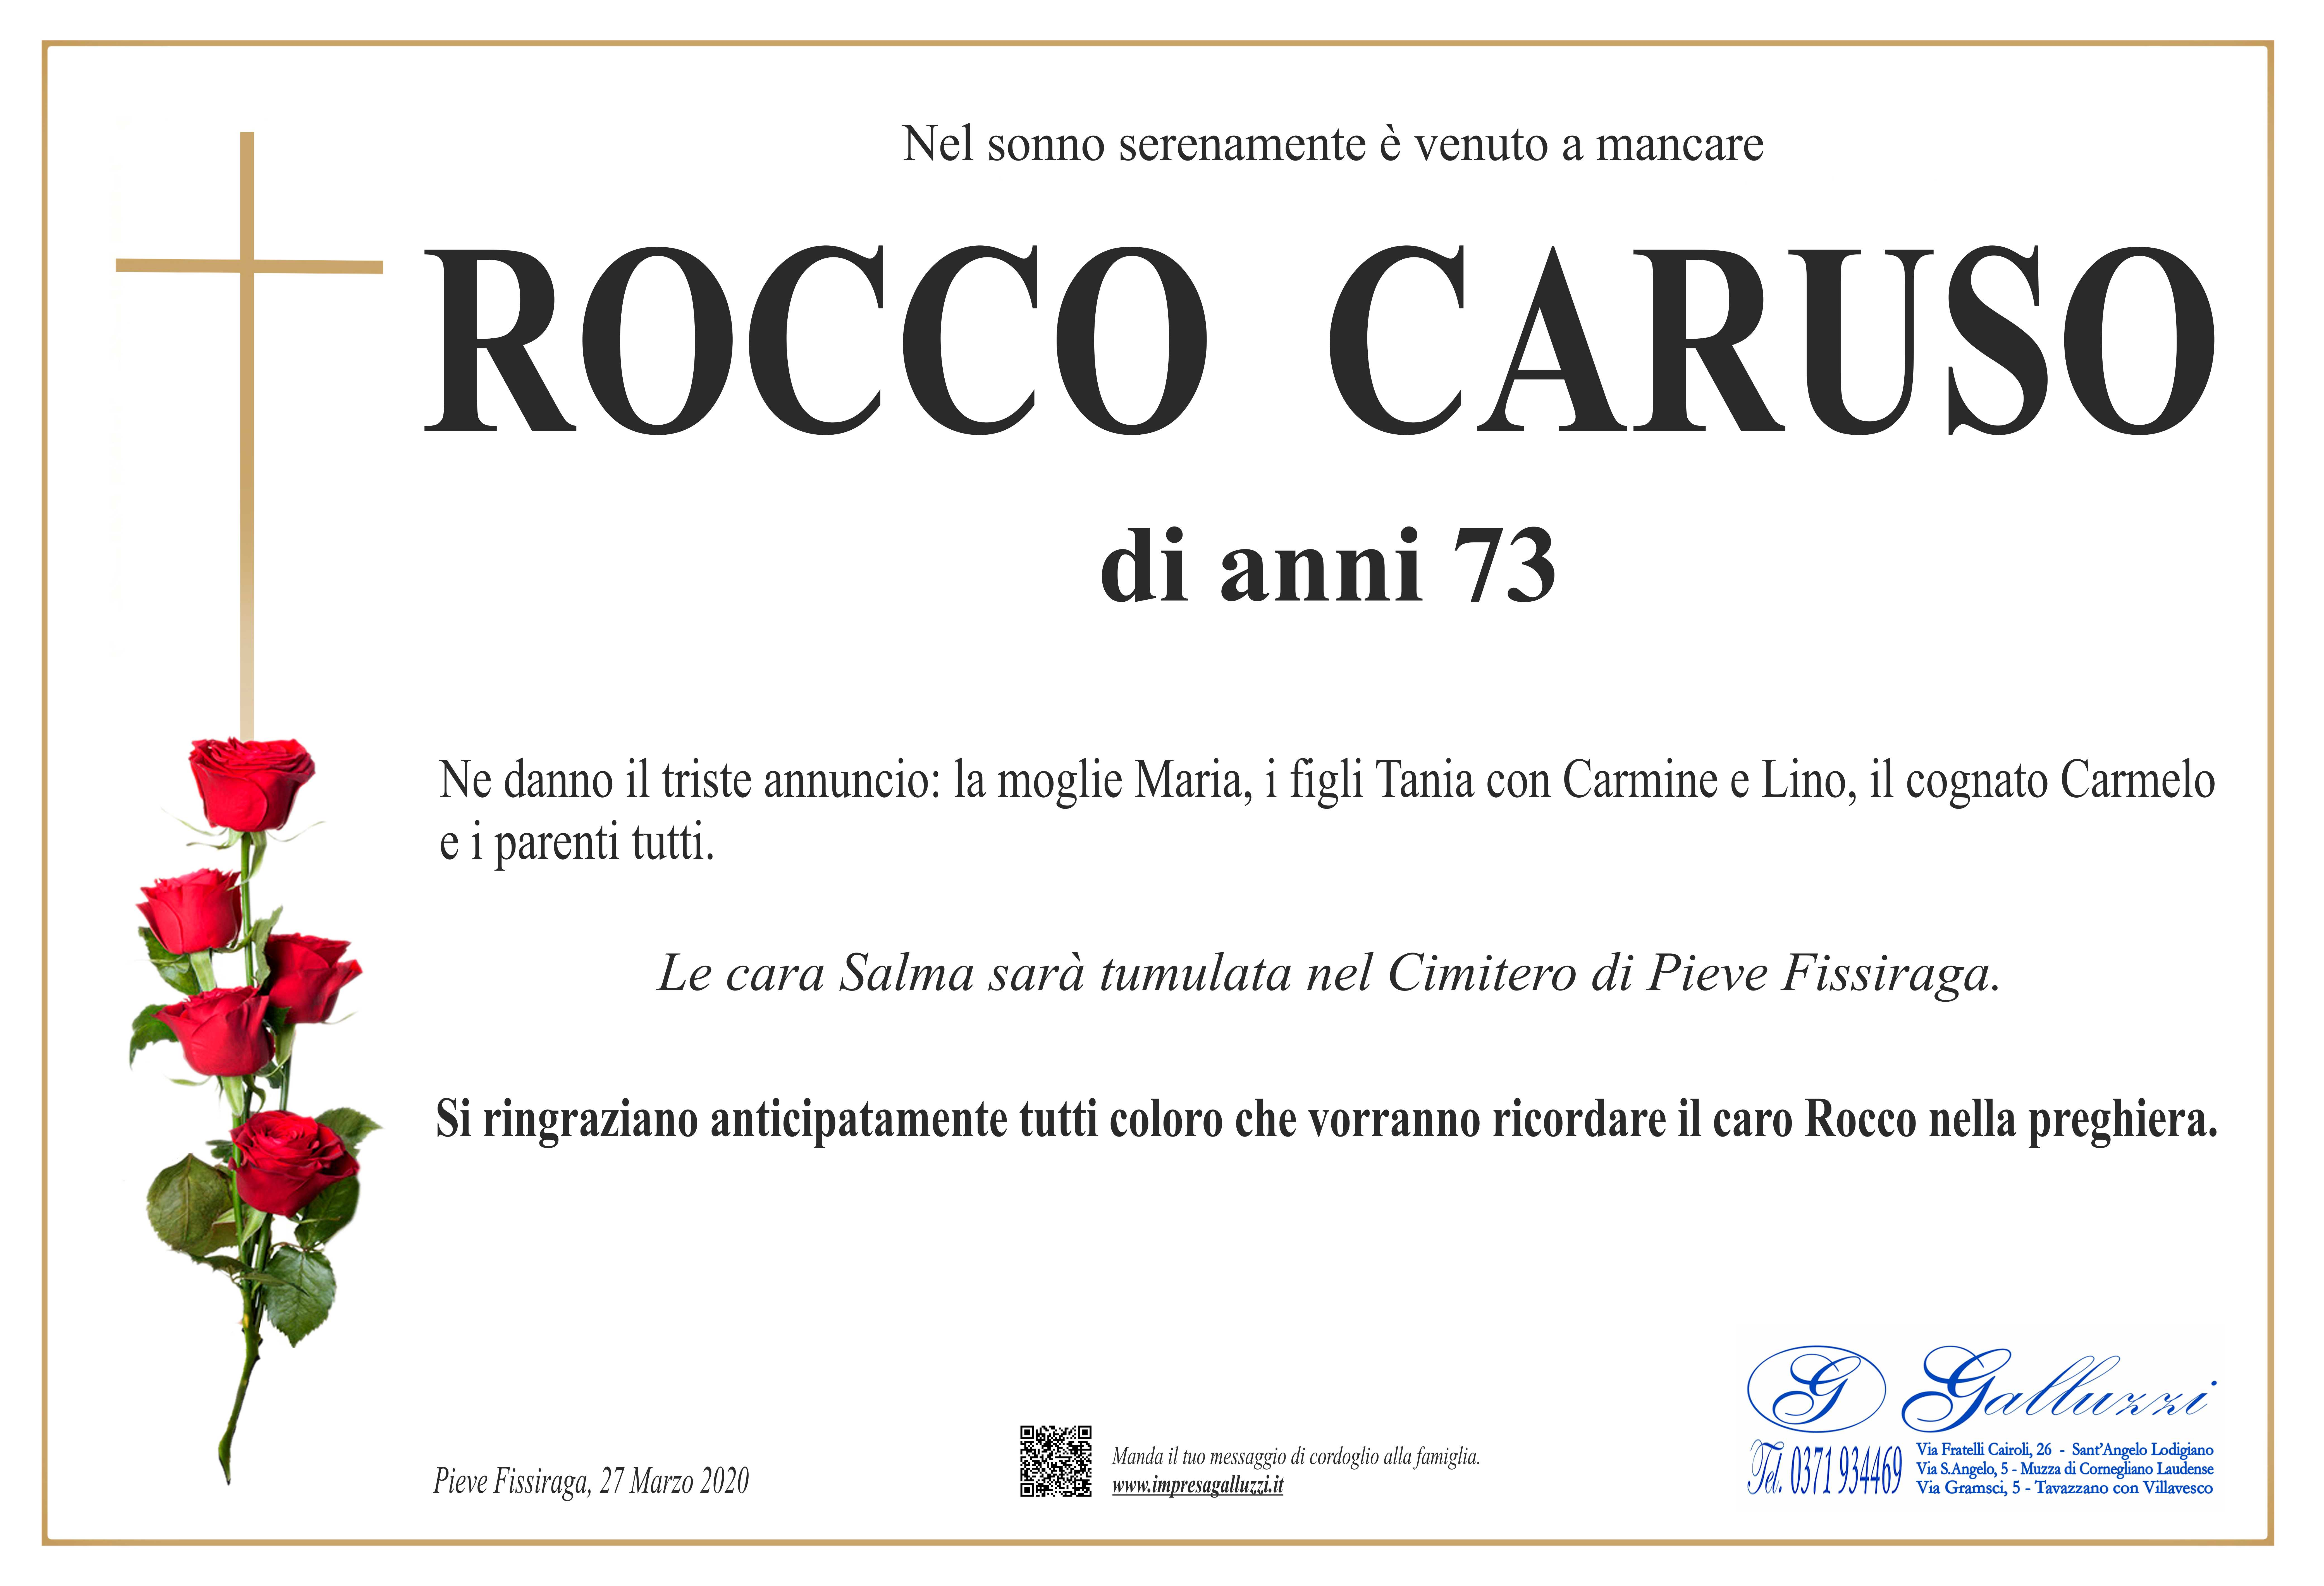 Rocco Caruso